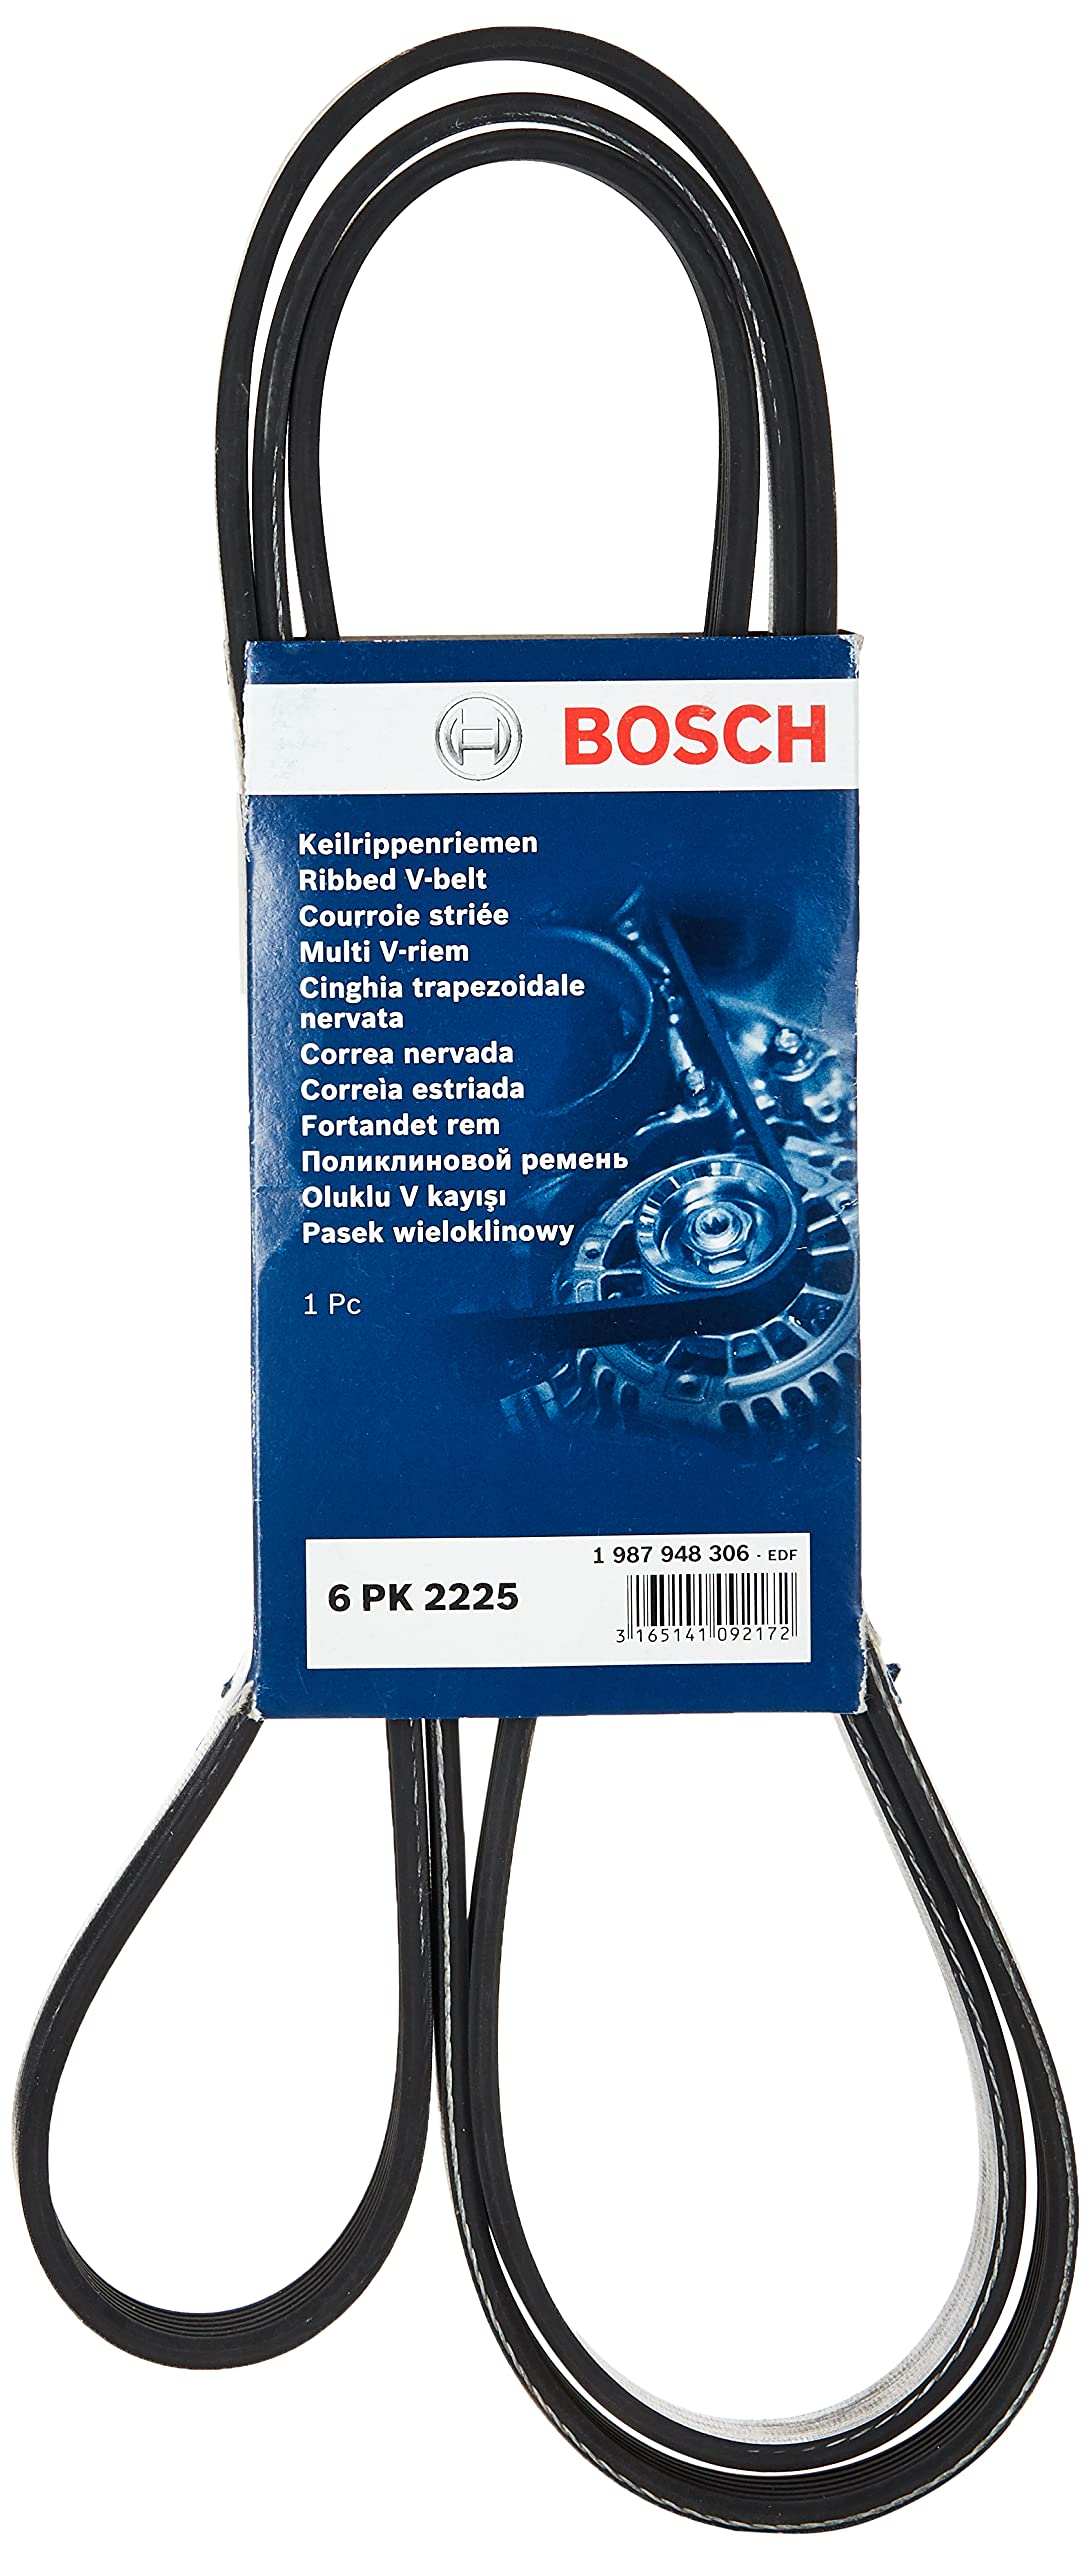 BOSCH 1 987 948 306 Keilrippenriemen von Bosch Automotive